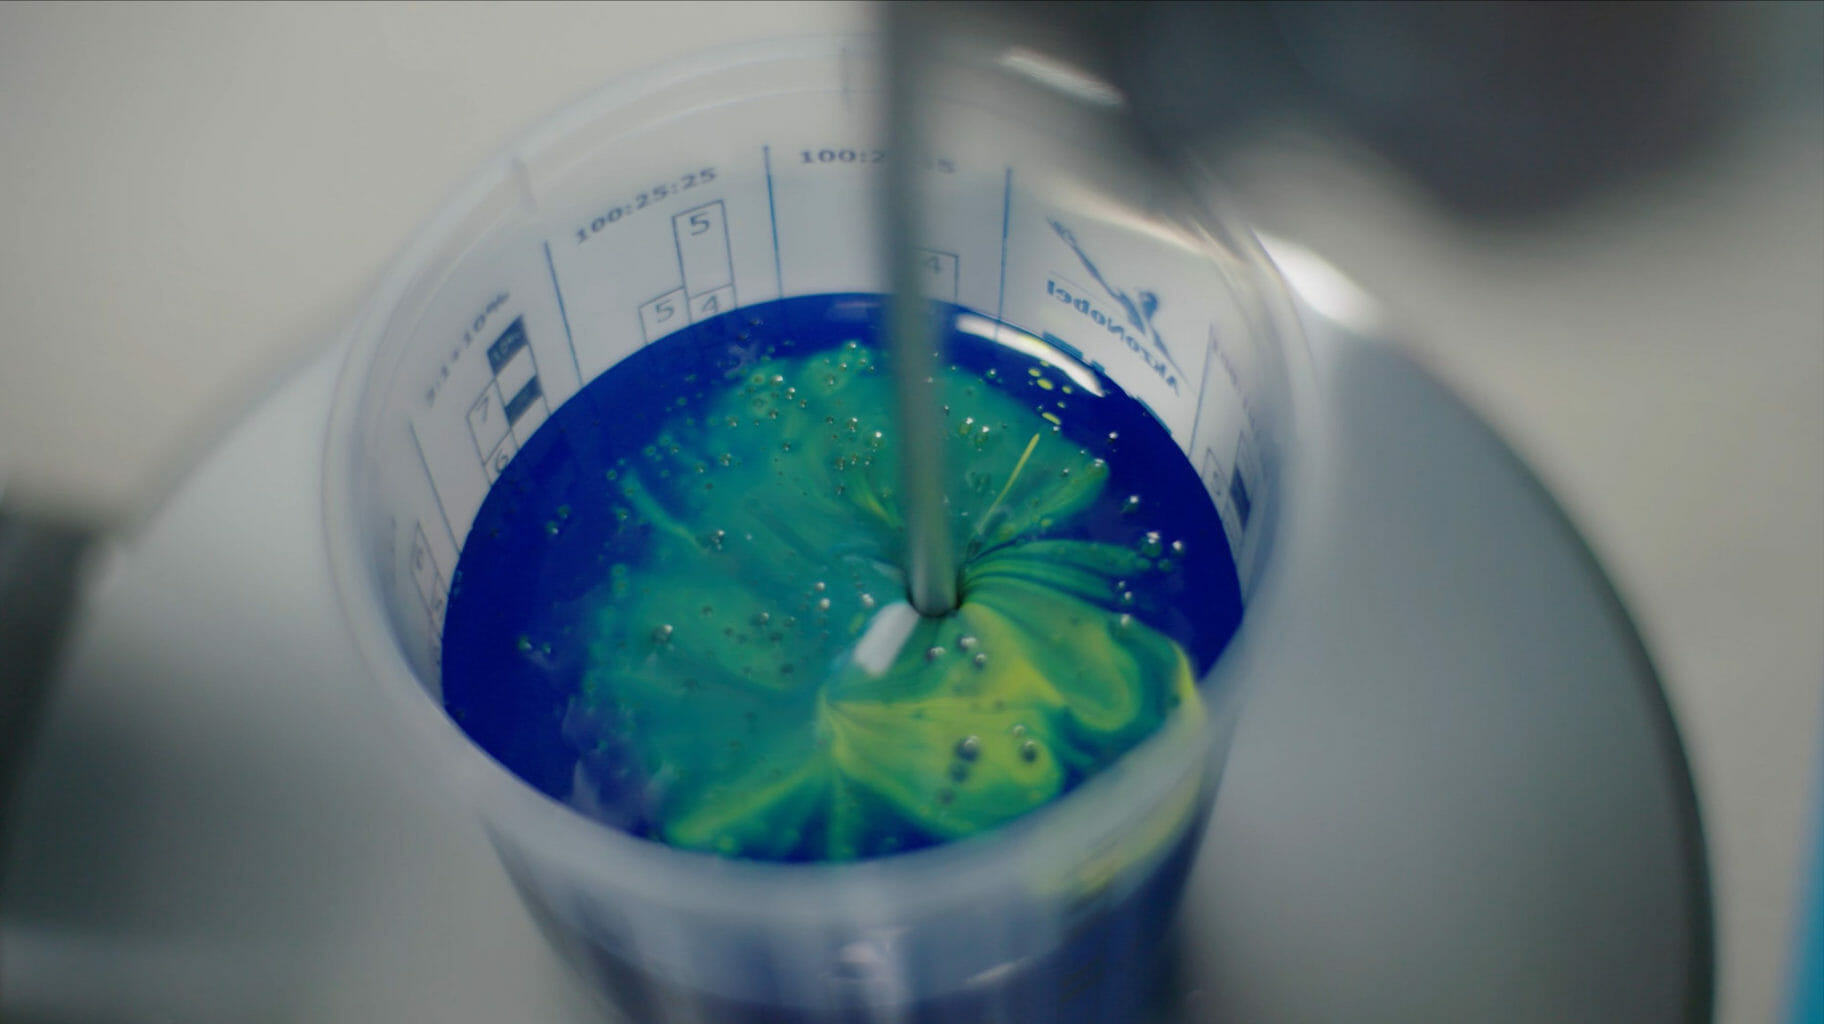 et nærbillede af en flaske med blå og grøn maling